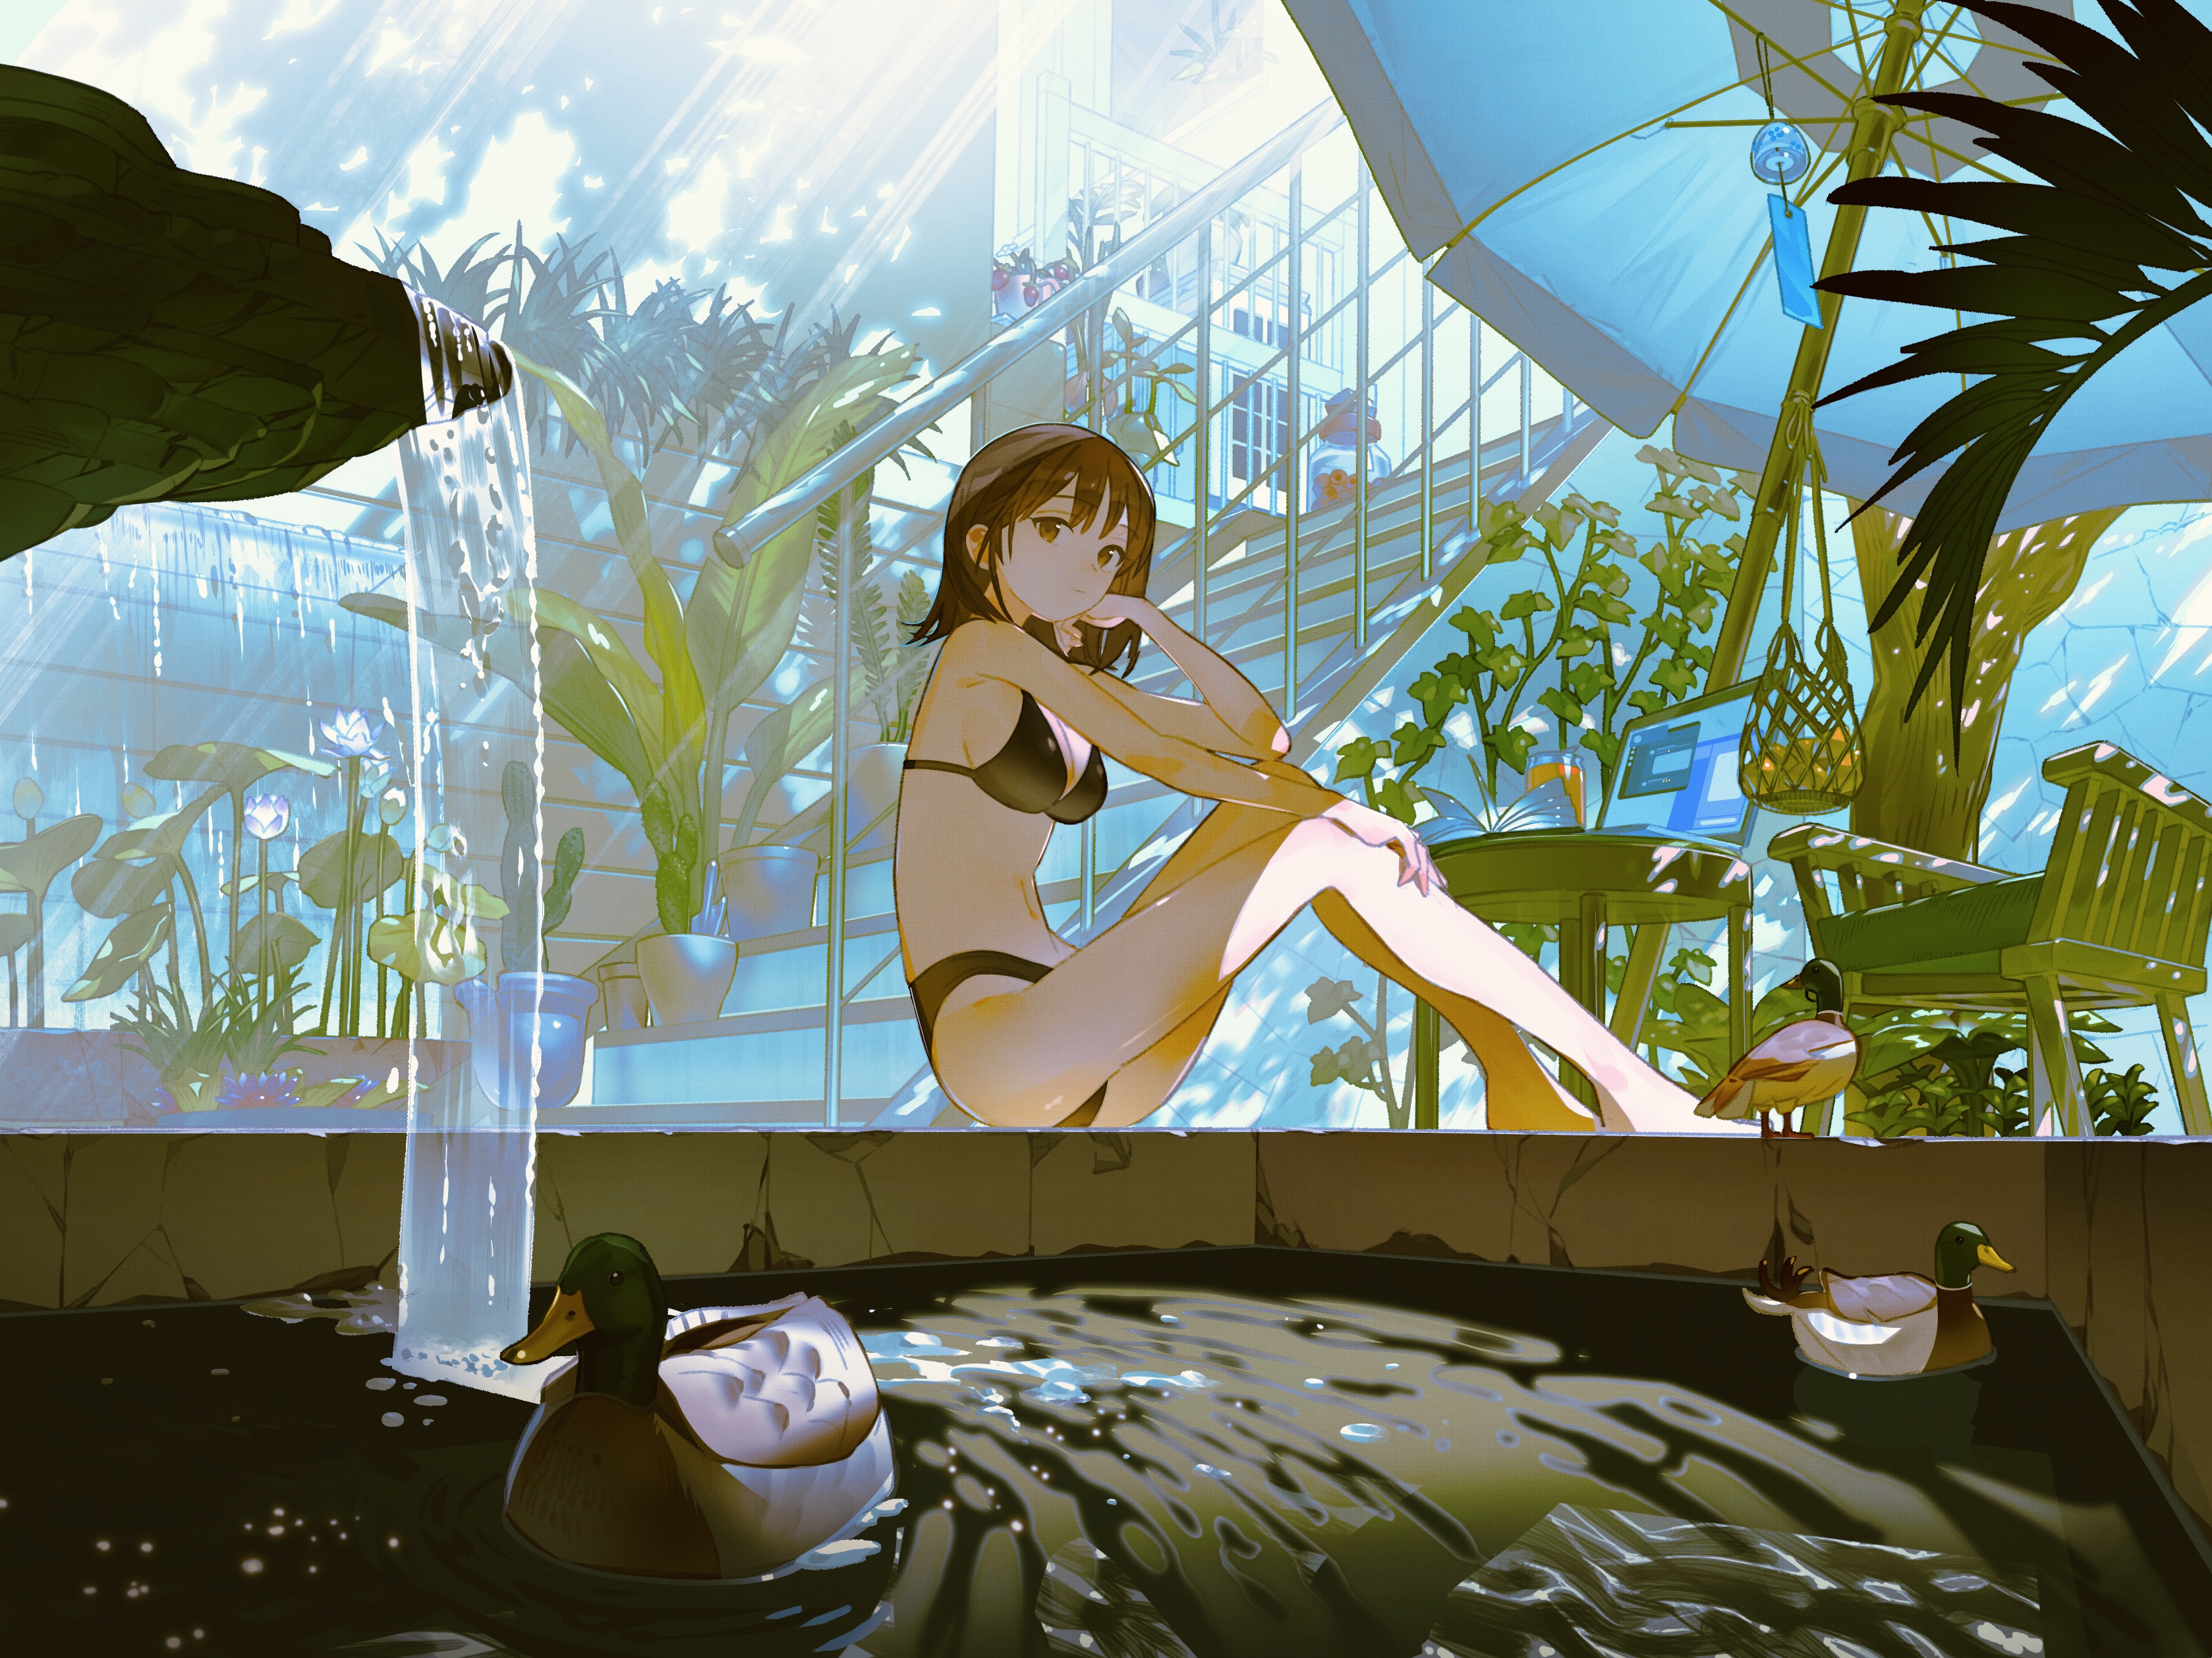 Anime 3357x2516 anime anime girls bikini animals water duck waterfall Aspara dappled sunlight stairs